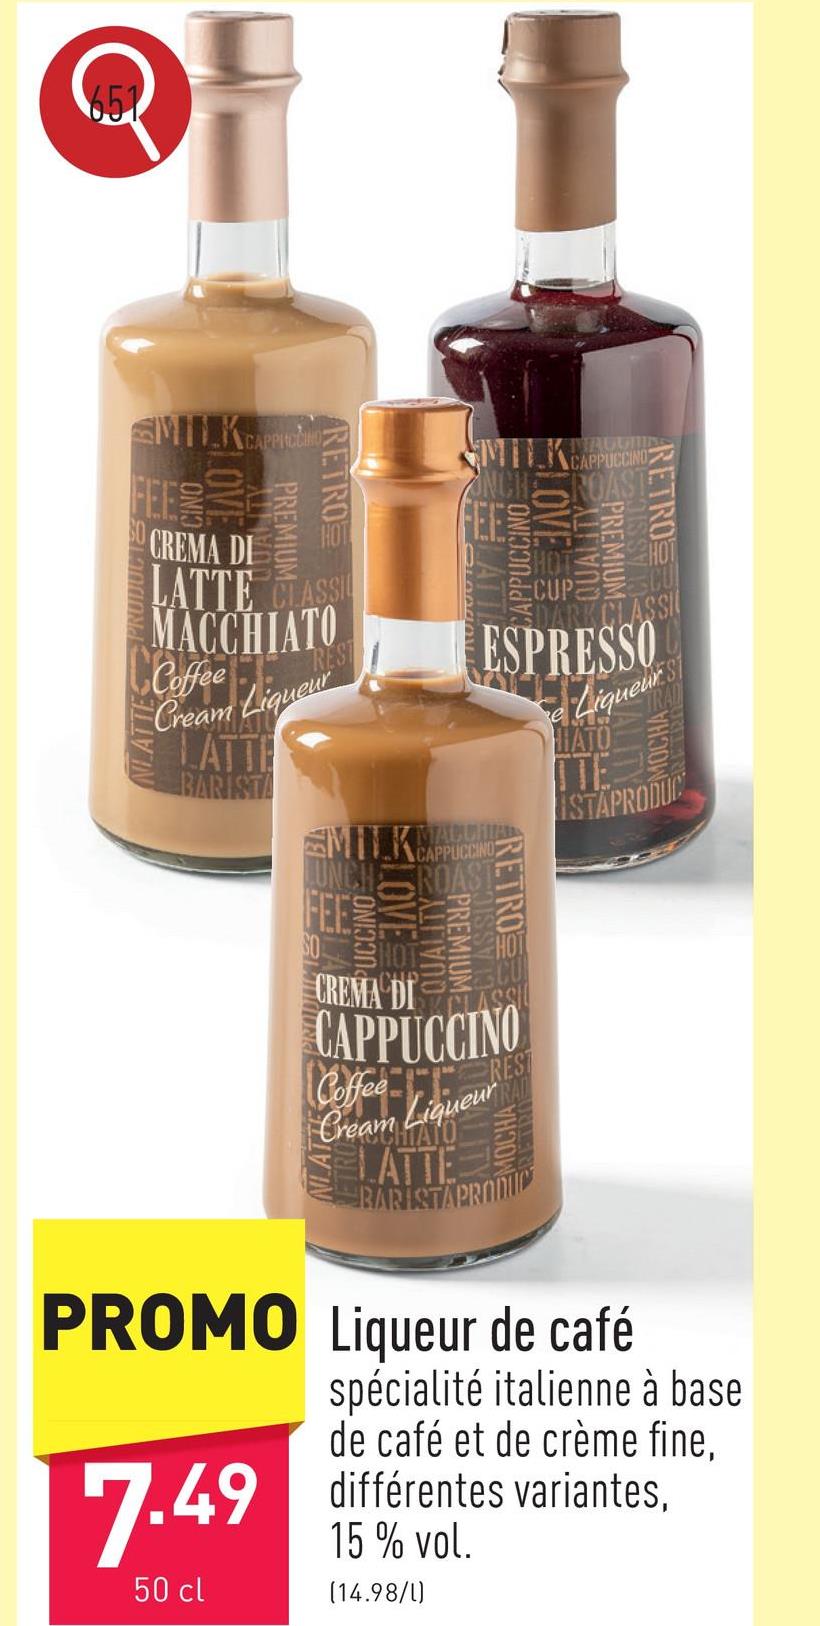 Liqueur de café spécialité italienne à base de café et de crème fine, choix entre différentes variantes, 15 % vol.